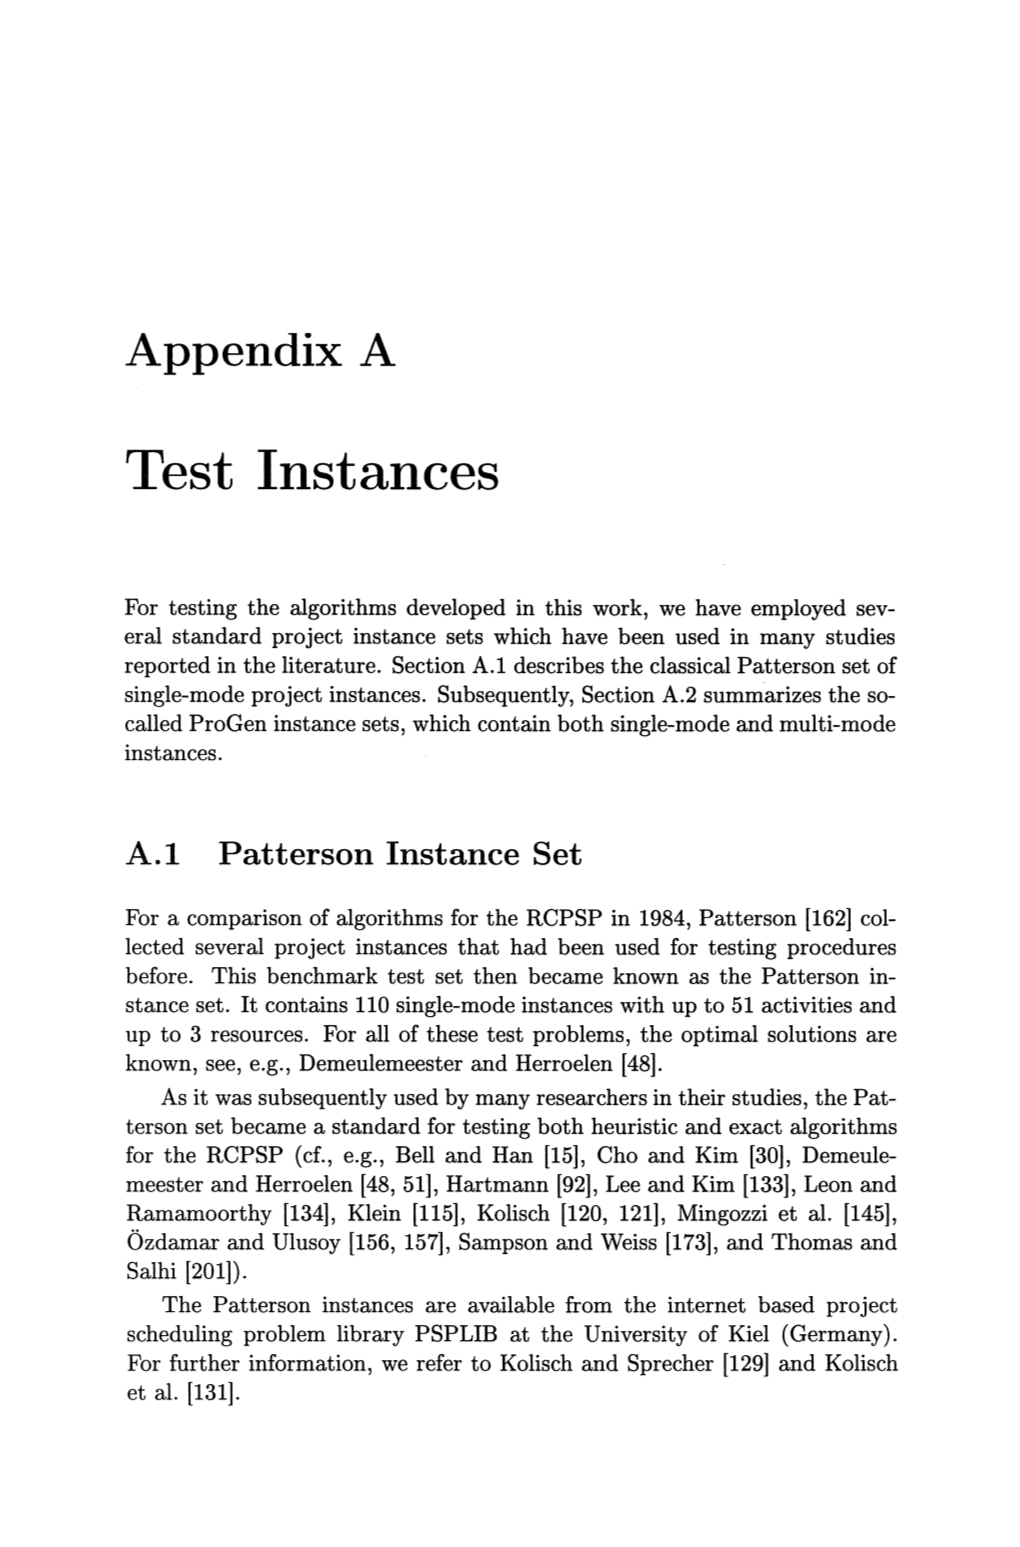 Test Instances